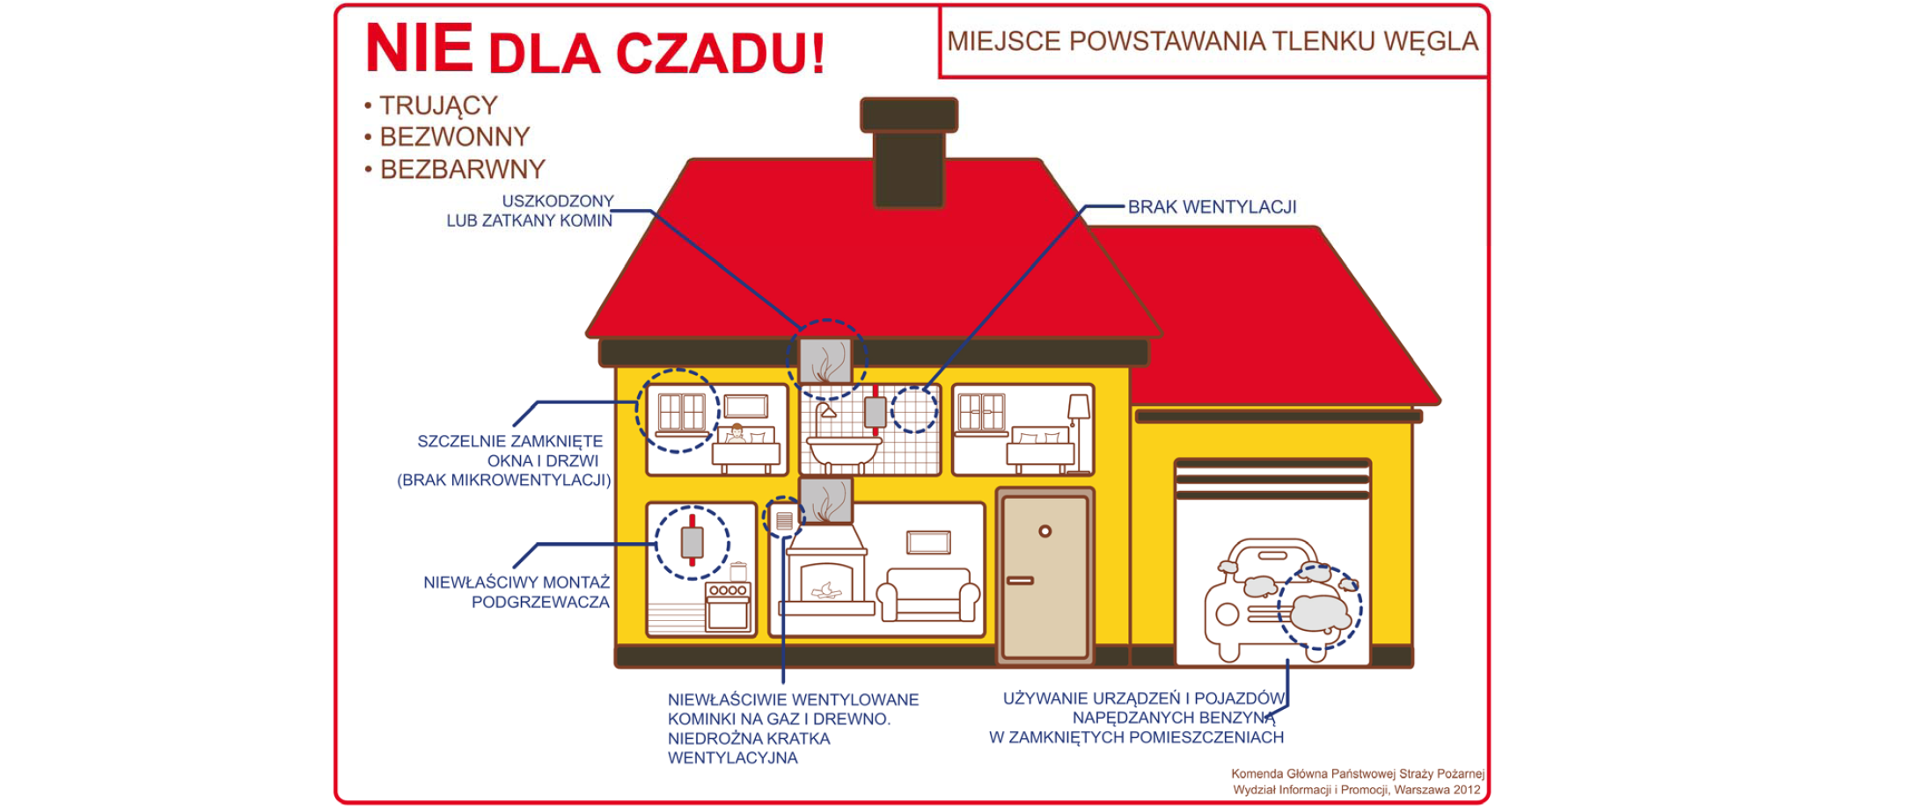 Grafika promująca akcję Państwowej Straży Pożarnej "NIE DLA CZADU". Zawarte na niej są grafiki określające miejsca powstania tlenku węgla w budynku mieszkalnym. Ilustracja przedstawia typowy dom mieszkalny, dach czerwony, ściany żółte. Sypialnia - szczelnie zamknięte okna i drzwi (brak mikrowentylacji), kuchnia - niewłaściwy montaż podgrzewacza, salon- niewłaściwe wentylowanie kominka na gaz i drewno, niedrożna kratka wentylacyjna, łazienka - brak wentylacji, garaż - używanie urządzeń i pojazdów napędzanych benzyną w zamkniętych pomieszczeniach